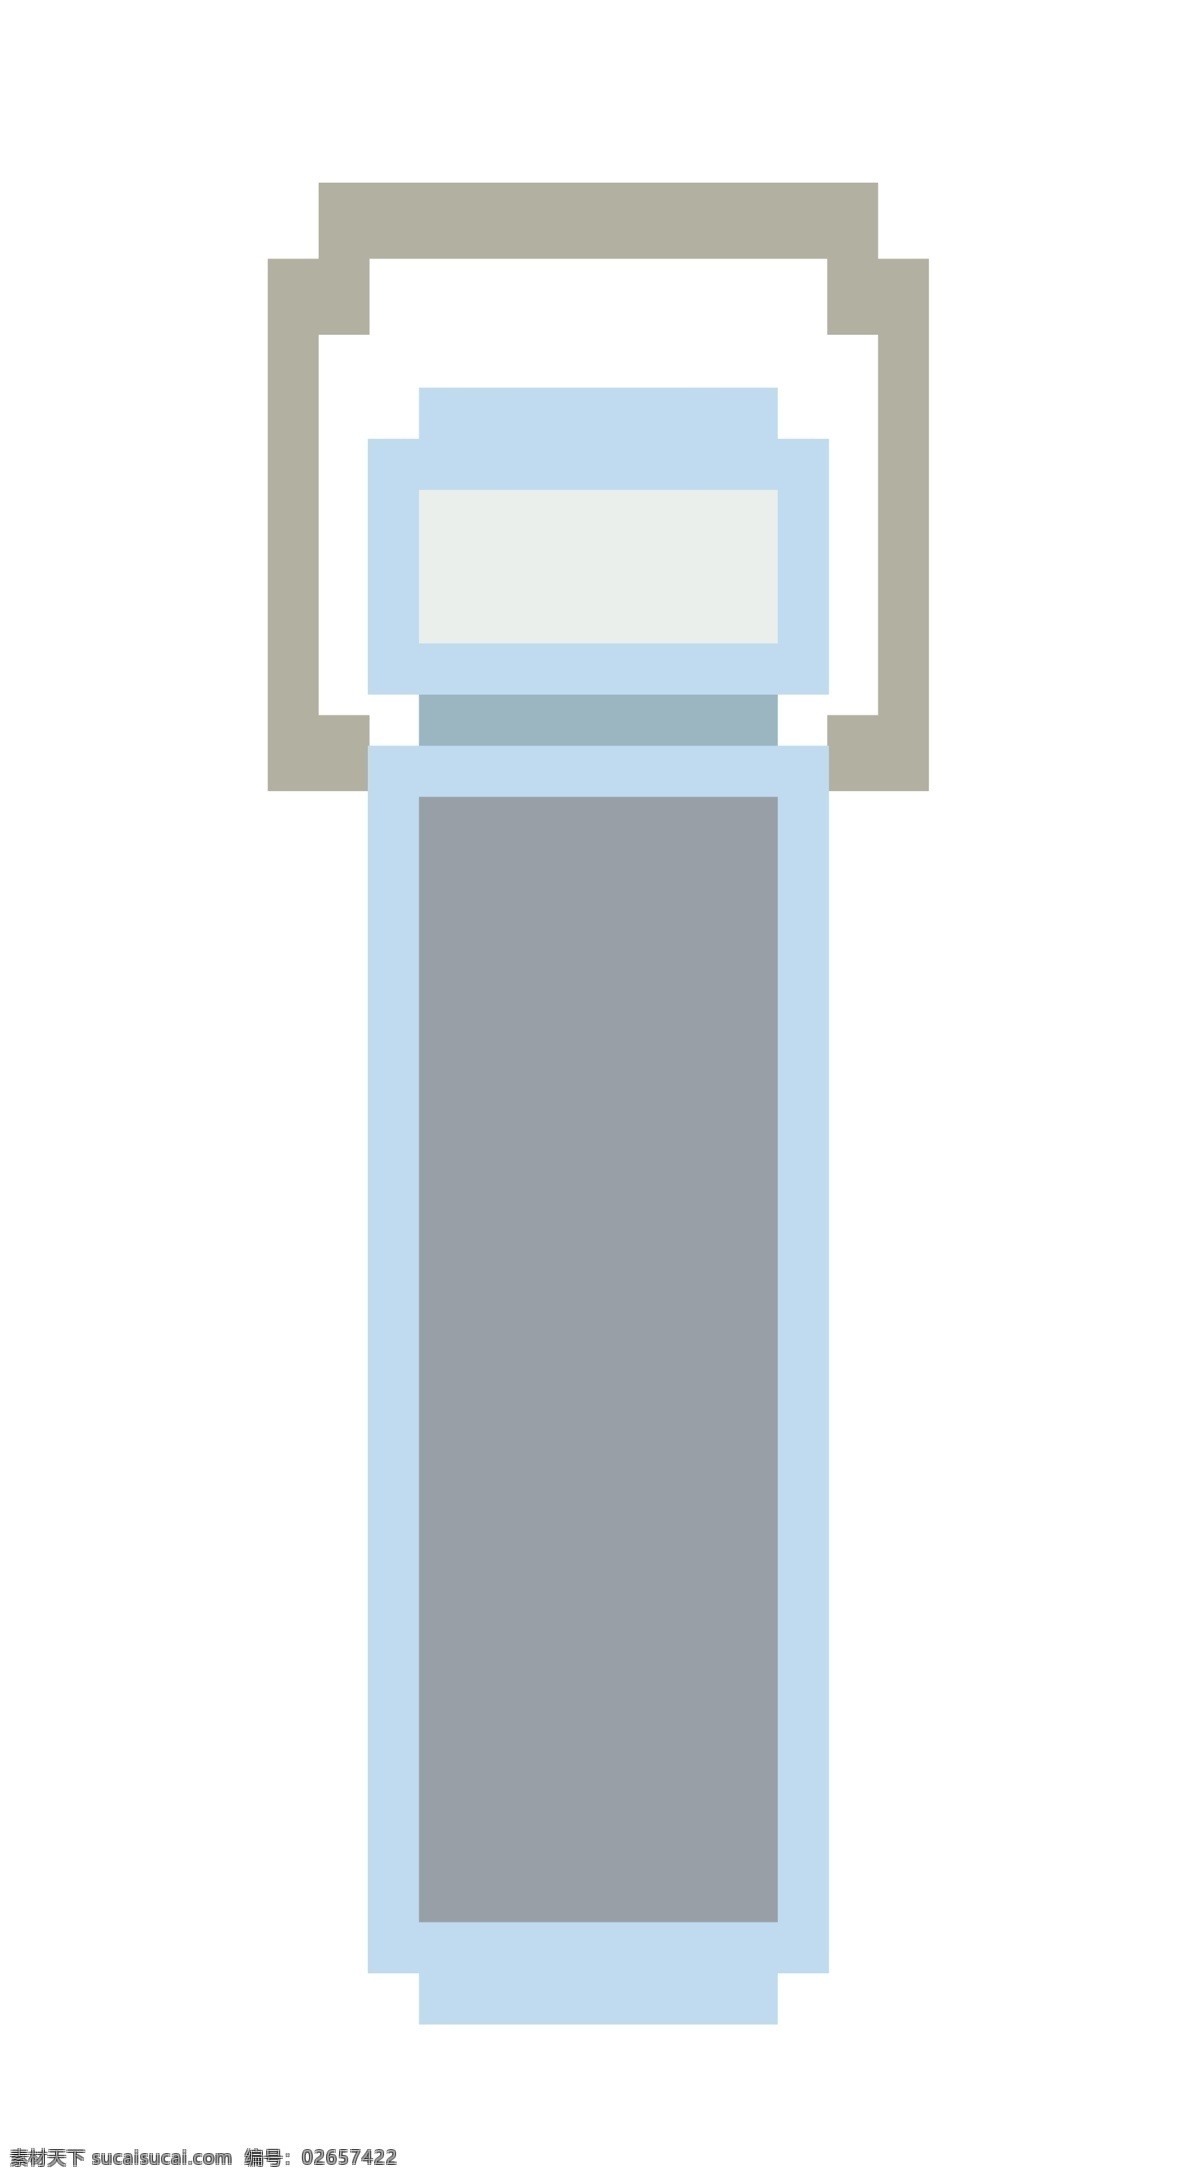 蓝色 电子秤 图案 插图 立体电子秤 蓝色电子称 电子产品 电子秤插图 科技电子秤 智能产品 卡通设计